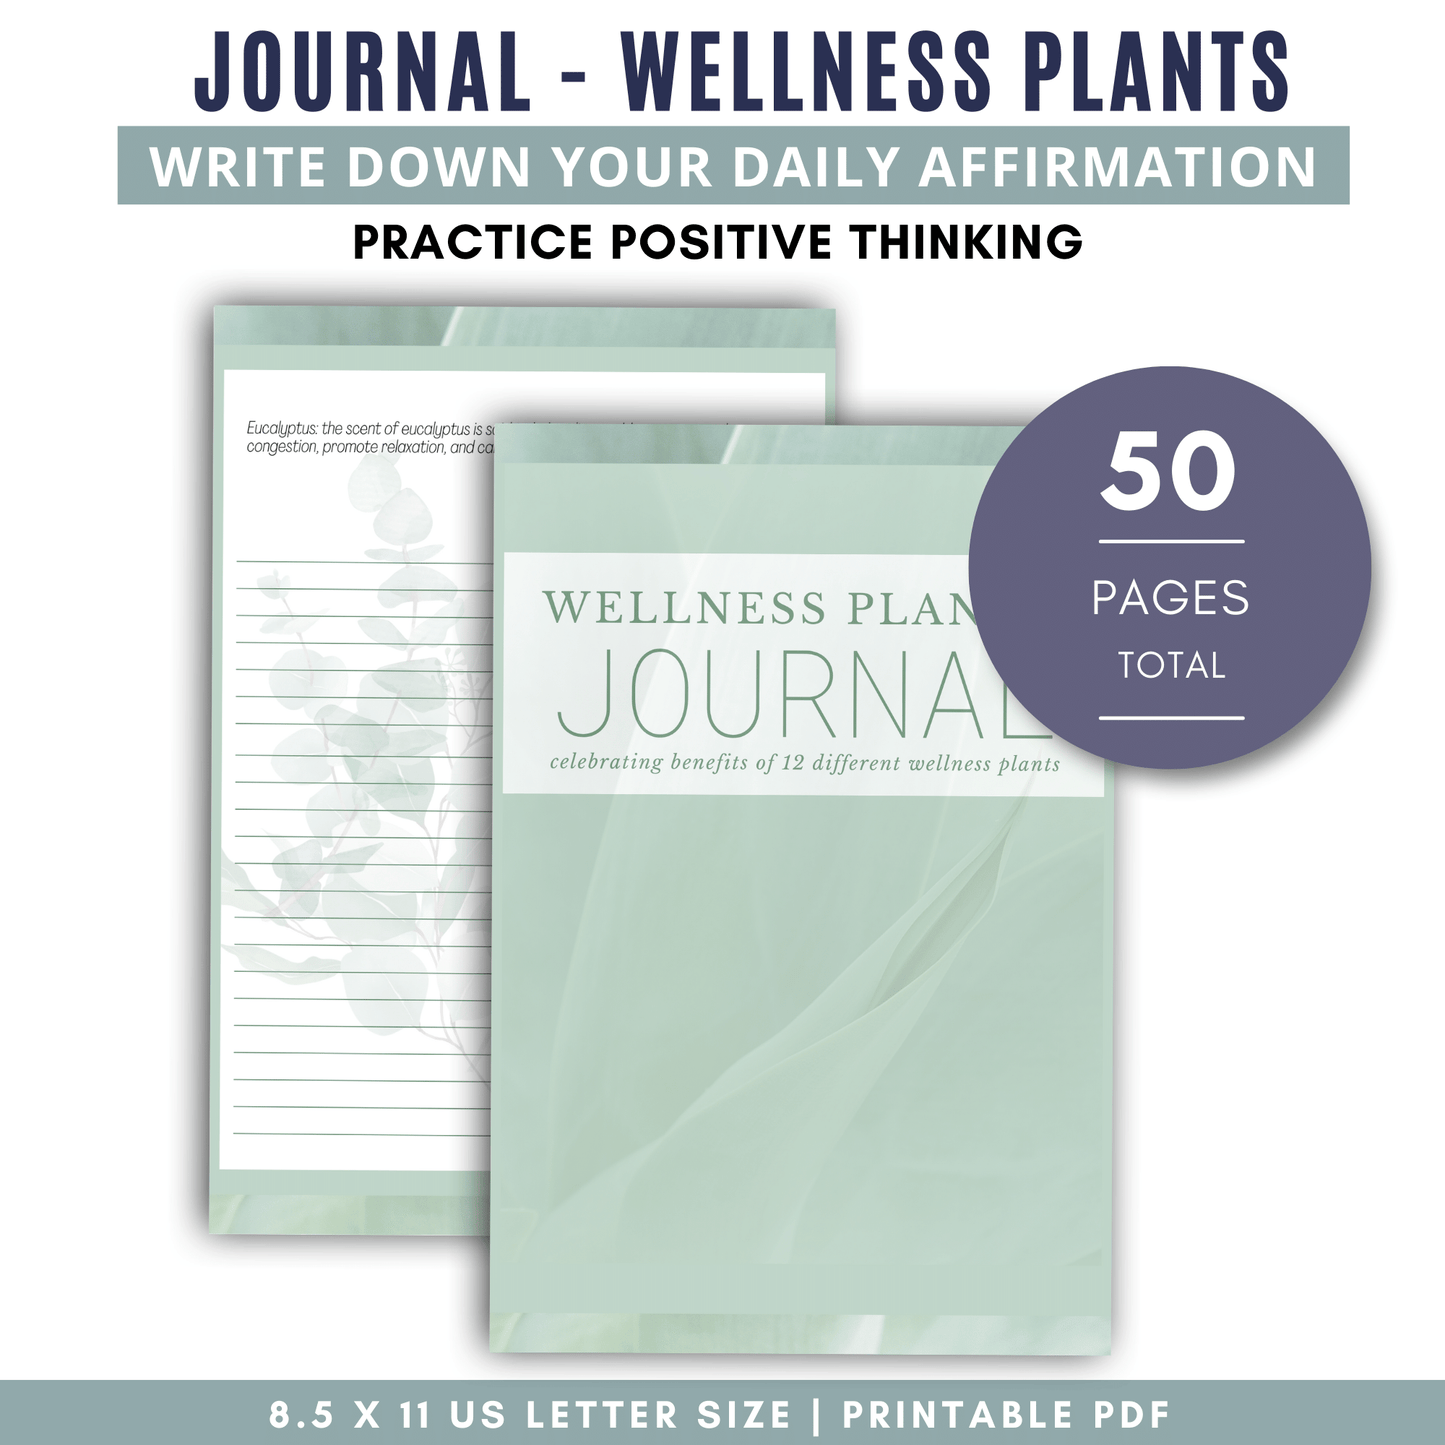 Journal - Wellness Plants - Green Background